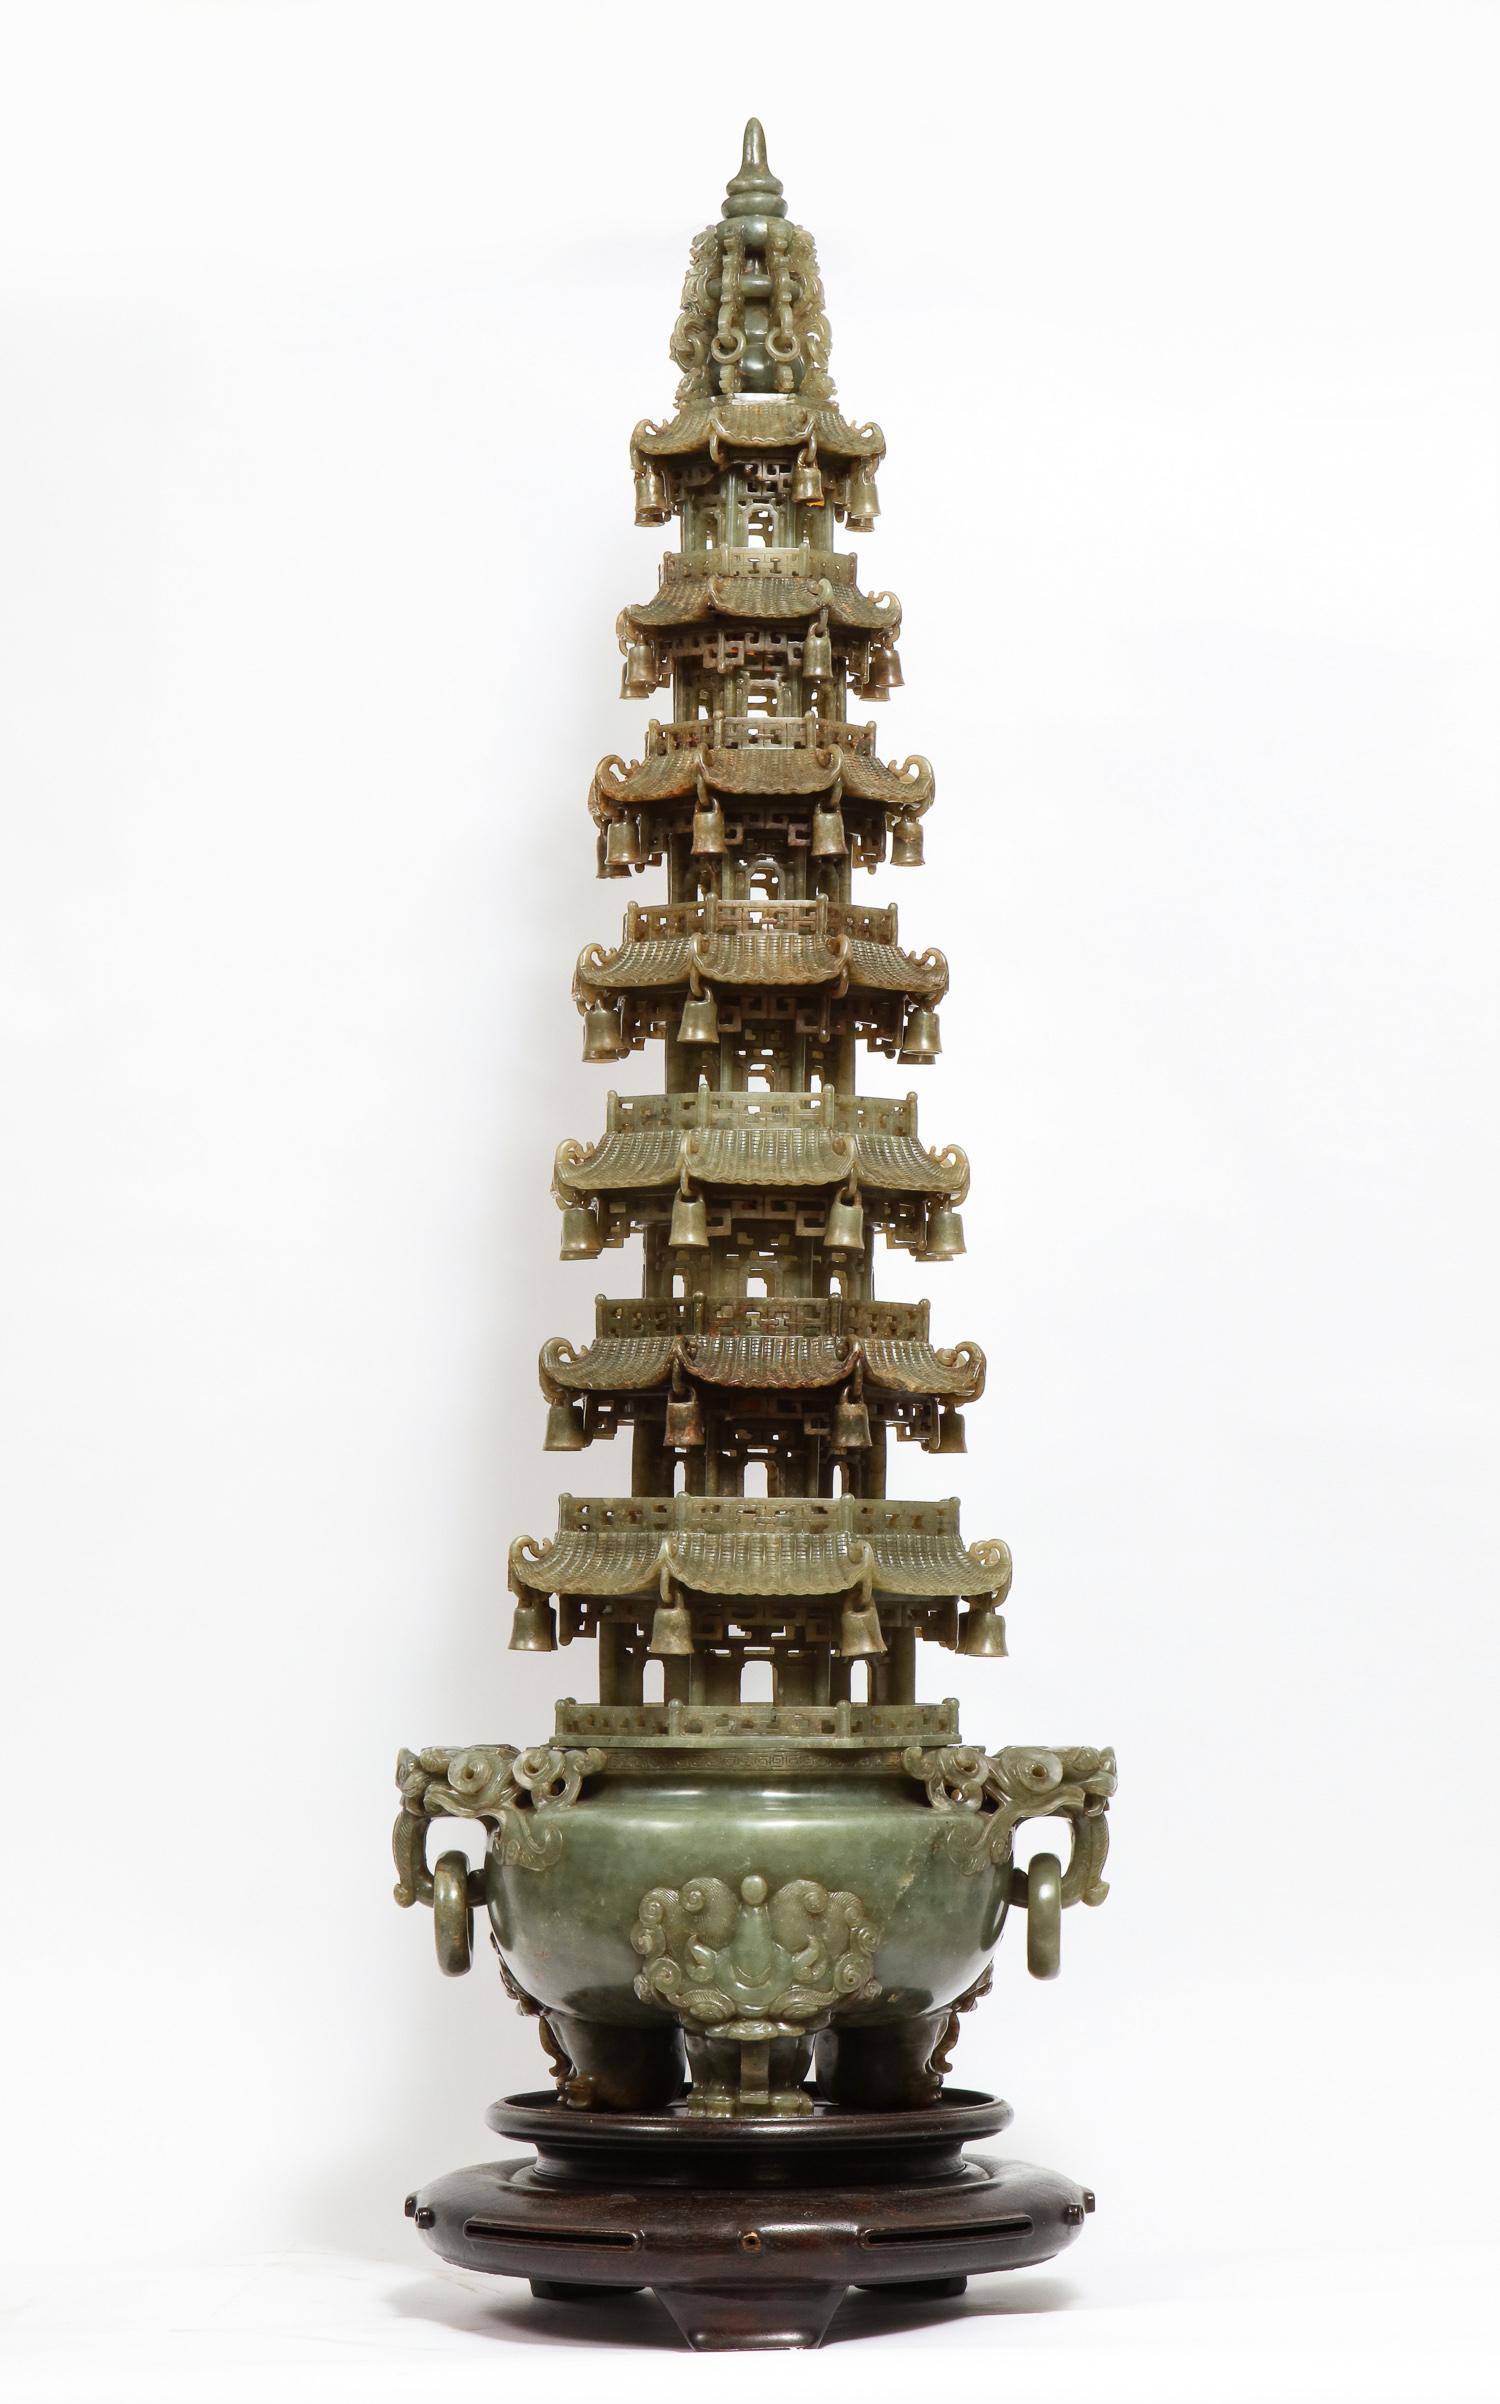 Monumentales chinesisches Pagodengefäß aus geschnitzter Serpentinjade, frühes 20. Jahrhundert.

Ein meisterhaft geschnitztes chinesisches Serpentinen-Pagodengefäß. Der Sockel des dreibeinigen Räuchergefäßes steht auf löwenköpfigen Tatzenfüßen. Zwei